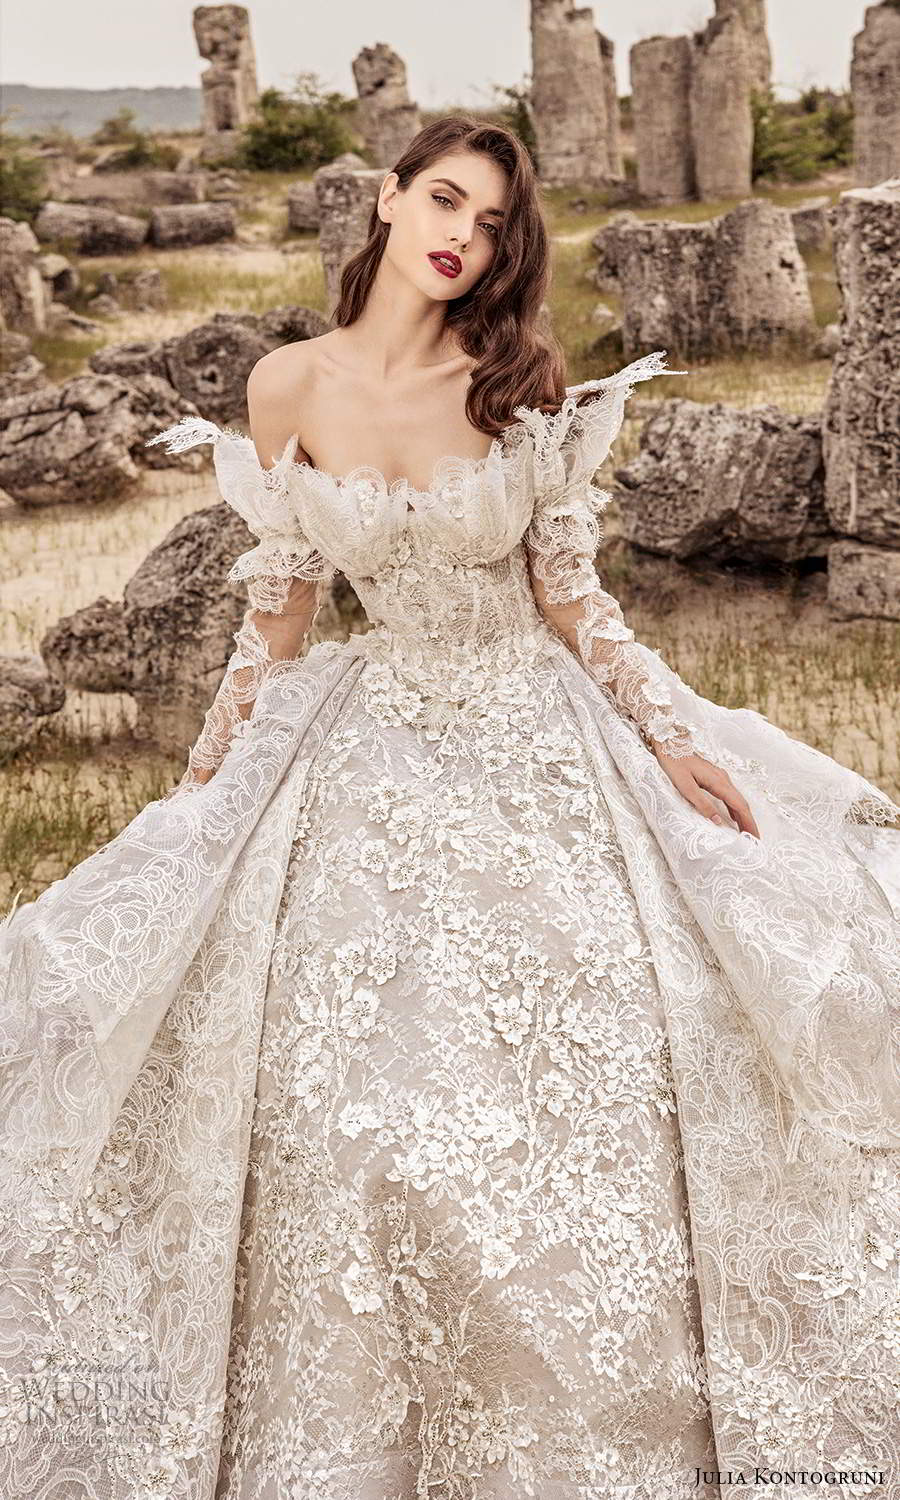 julia kontogruni 2021 bridal off shoulder long straps crumb catcher neckline fully embellished ball gown wedding dress cathedral train (9) mv